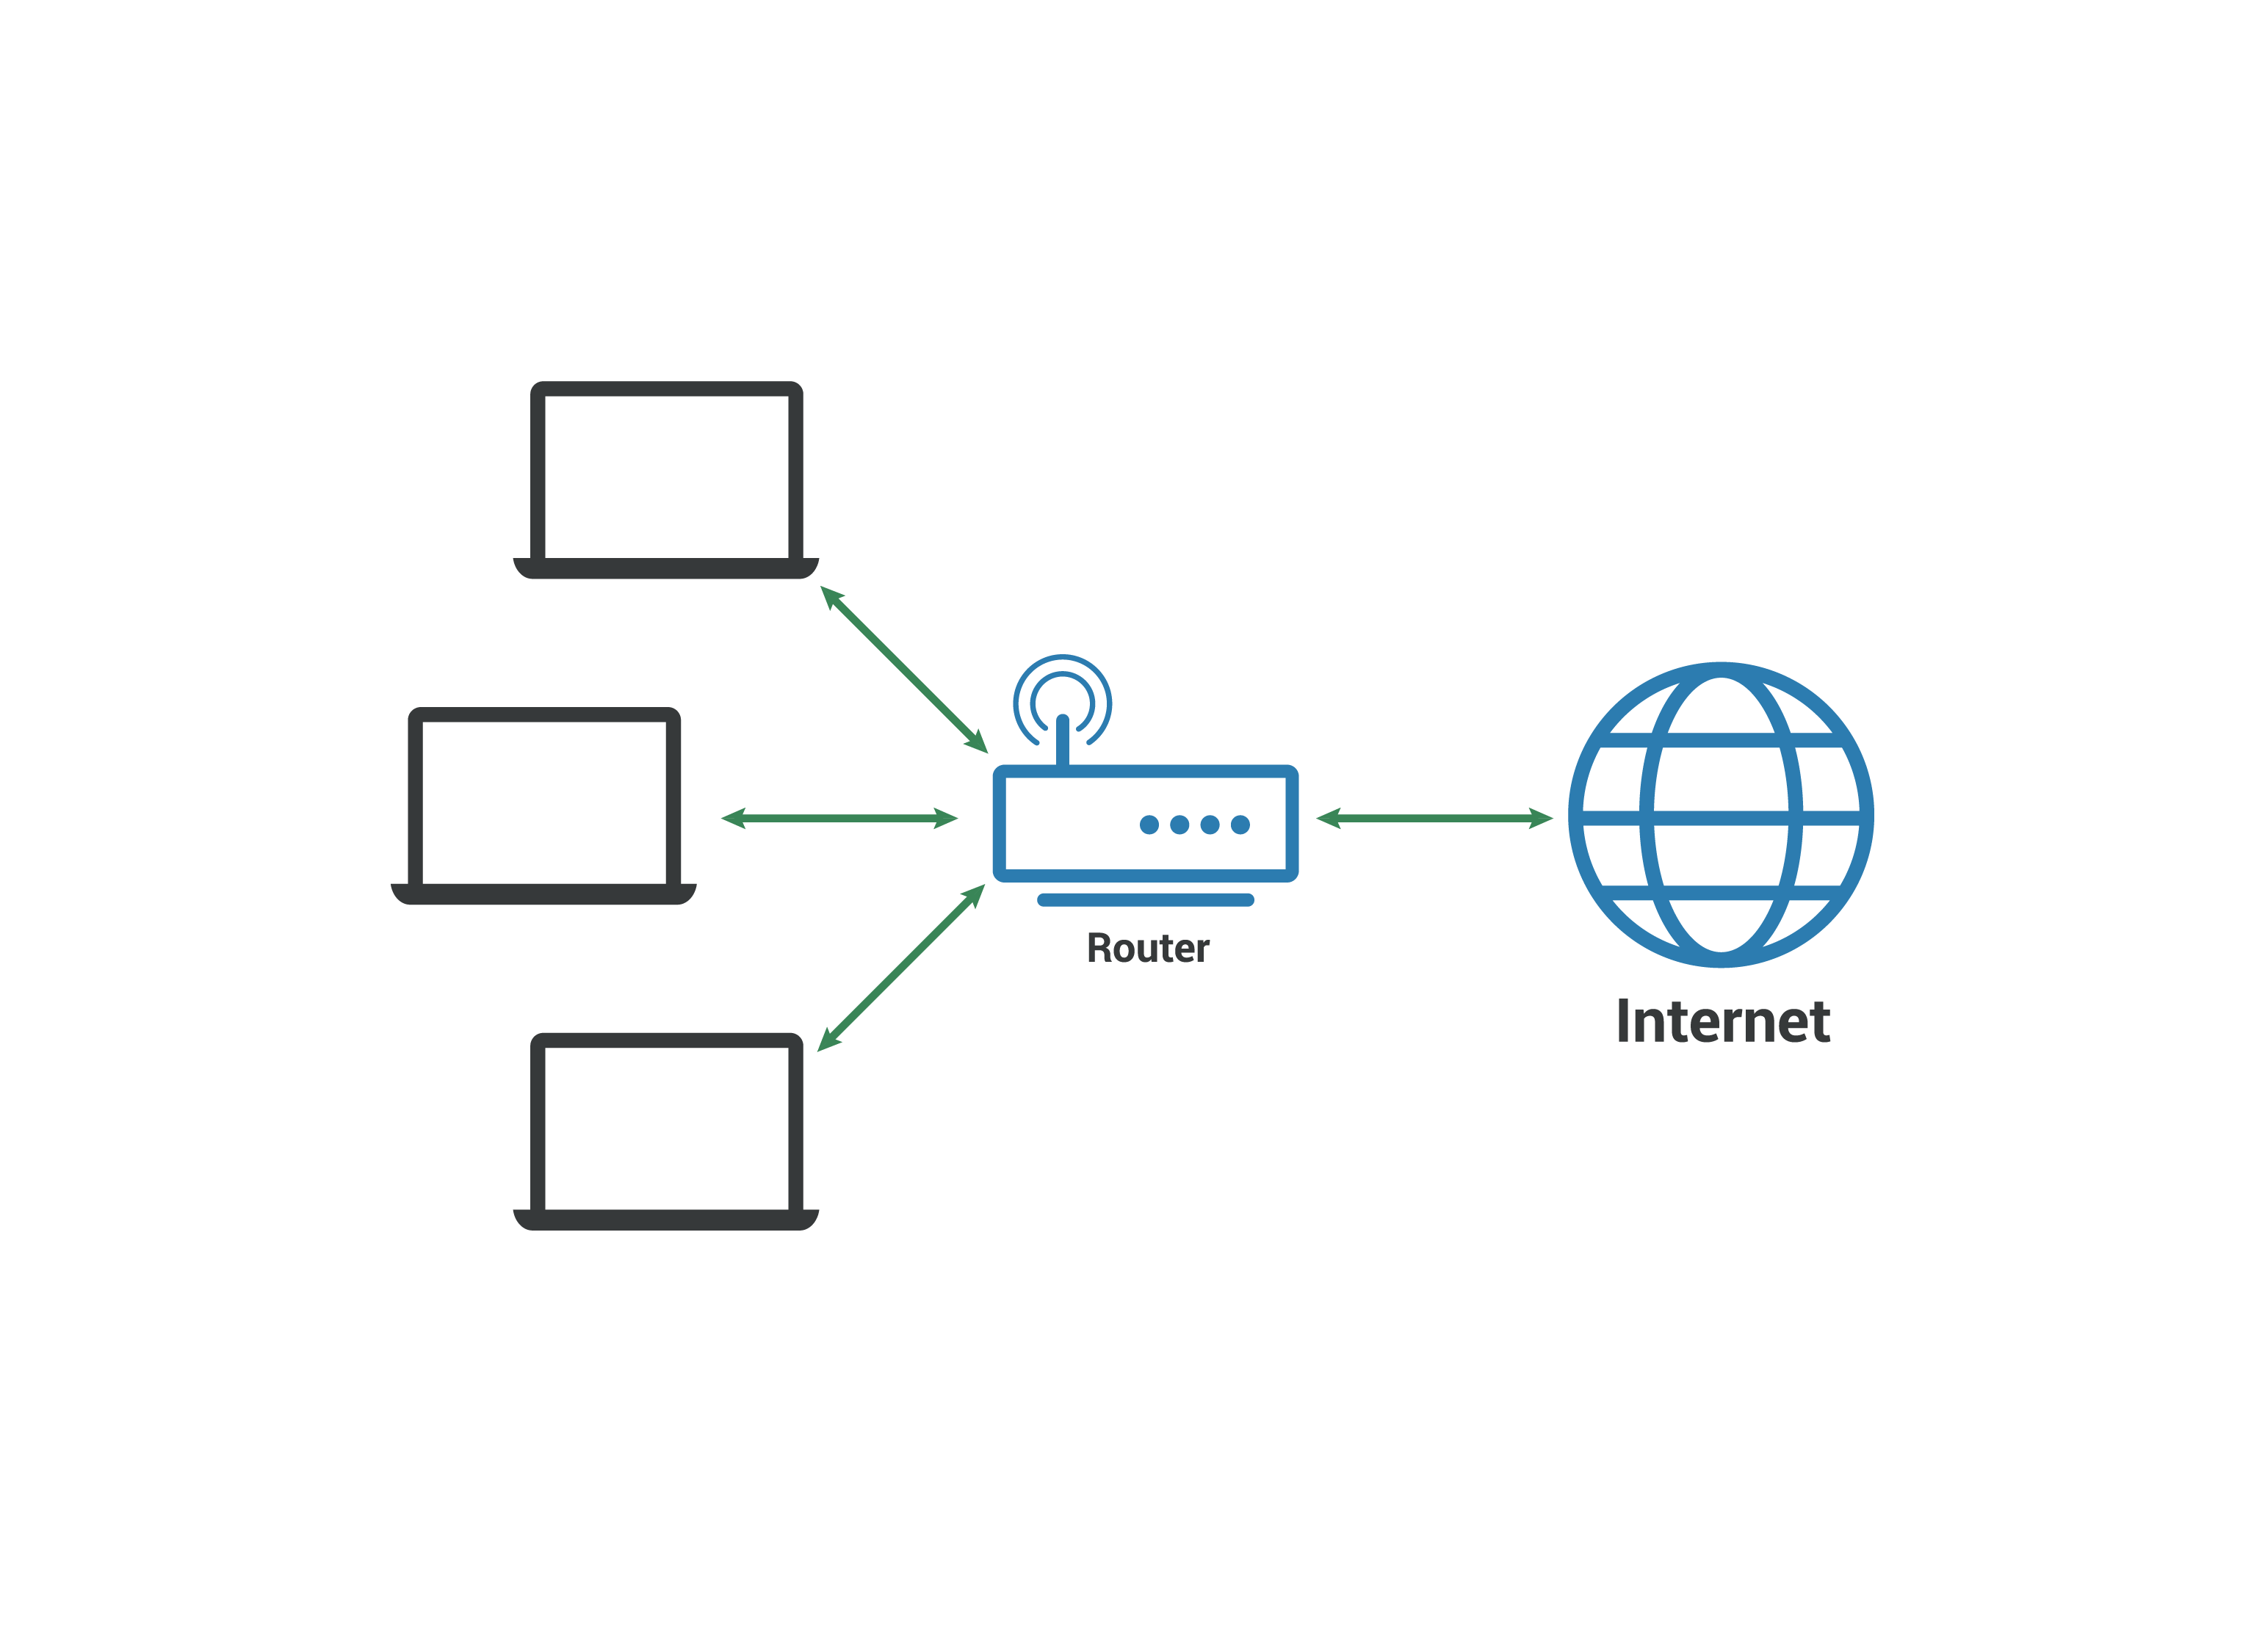 Red de área local LAN - Los ordenadores se conectan al enrutador que se conecta a Internet